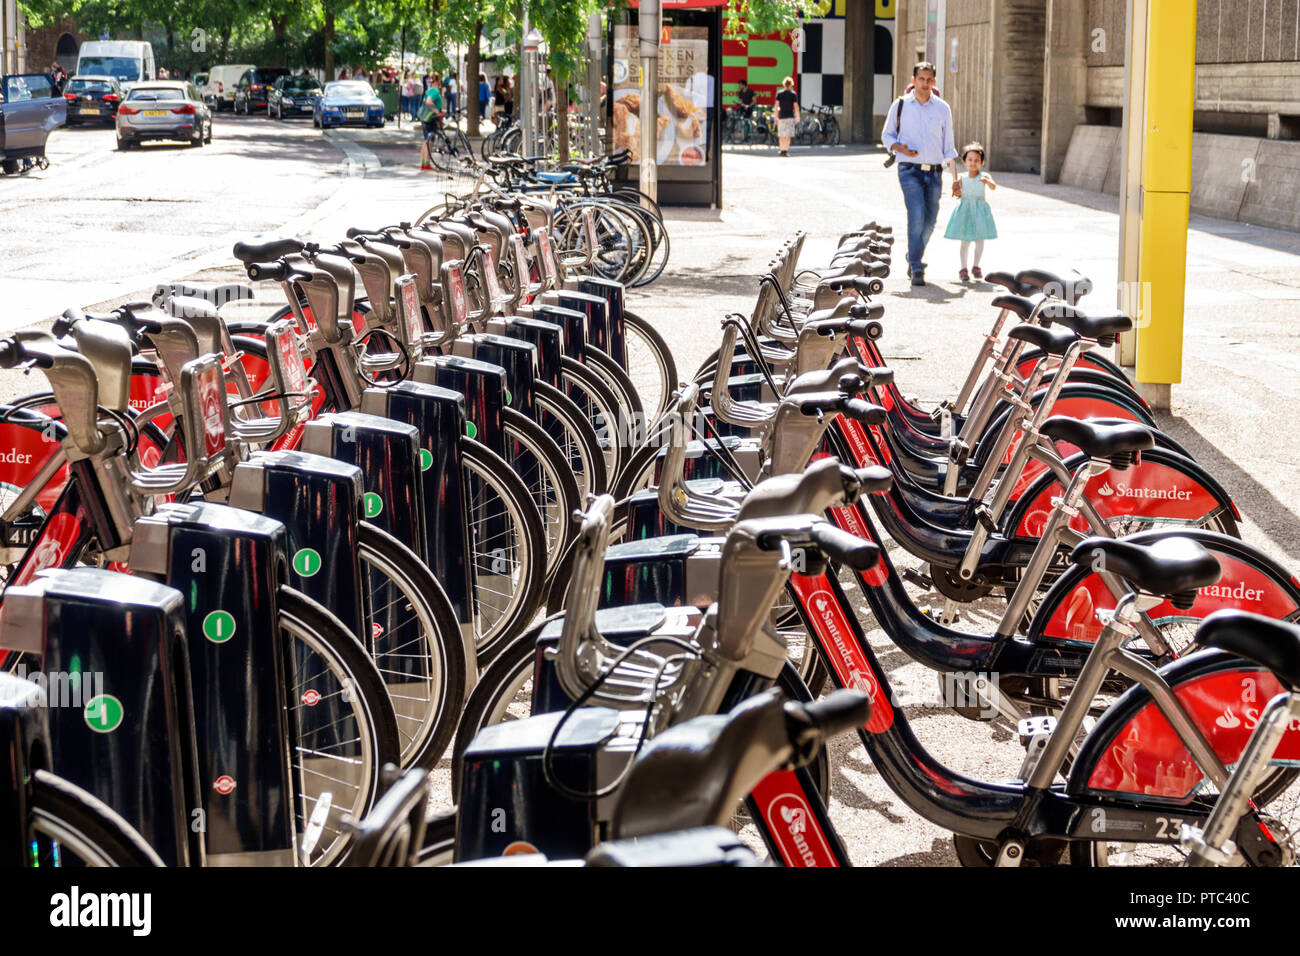 Royaume-Uni Londres Angleterre,Royaume-Uni Lambeth South Bank,Santander cycles,public vélo location arrangement, système de partage de vélo, Boris Bikes station d'accueil UK, Banque D'Images